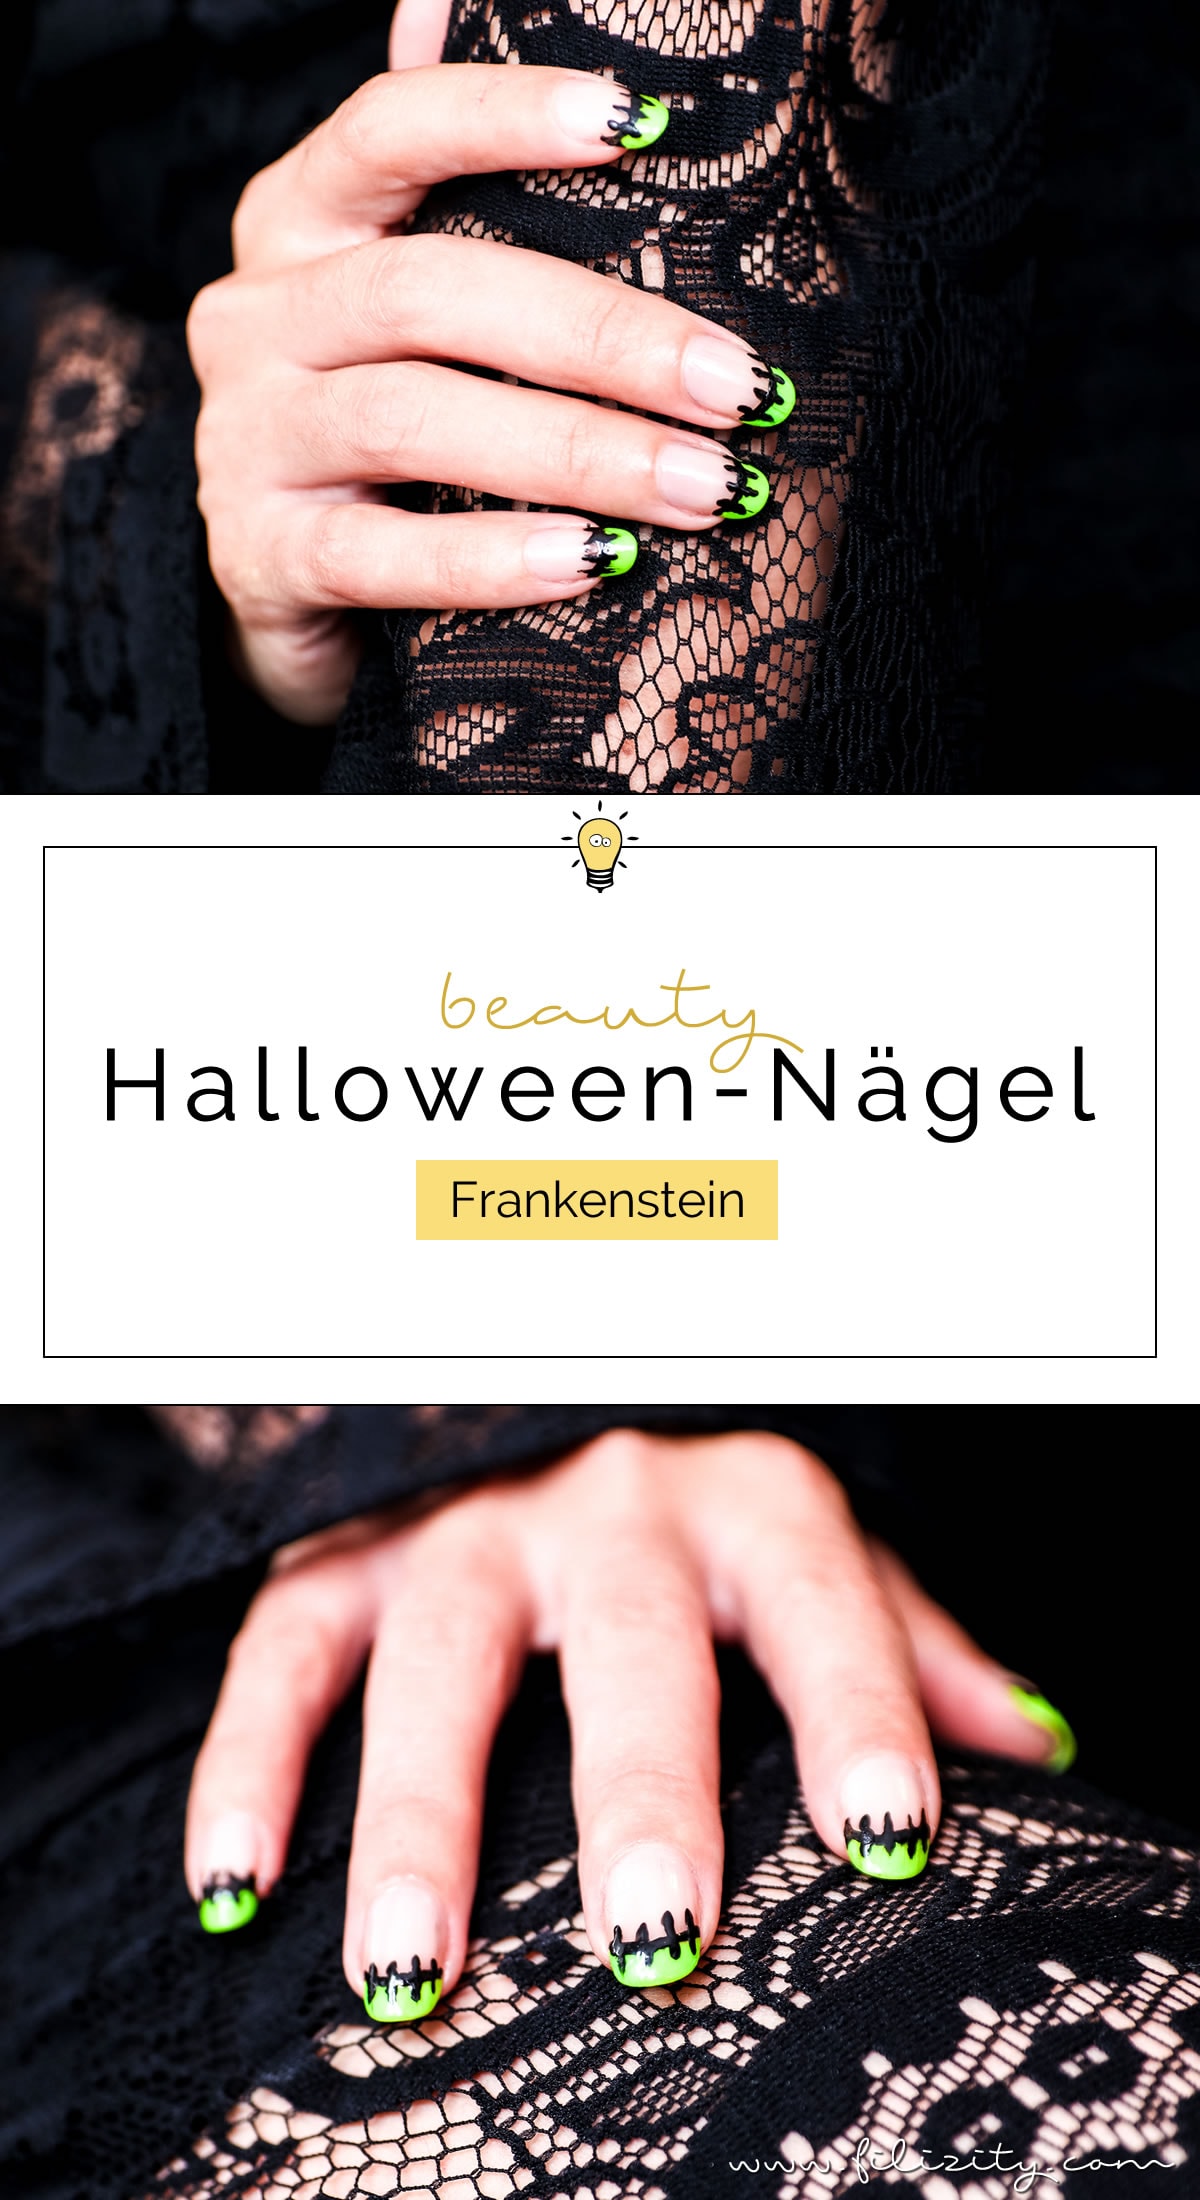 Flippiges Halloween Nageldesign "Frankenstein" - Einfache Maniküre Idee | Filizity.com | Beauty-Blog aus dem Rheinland #halloween #nagellack